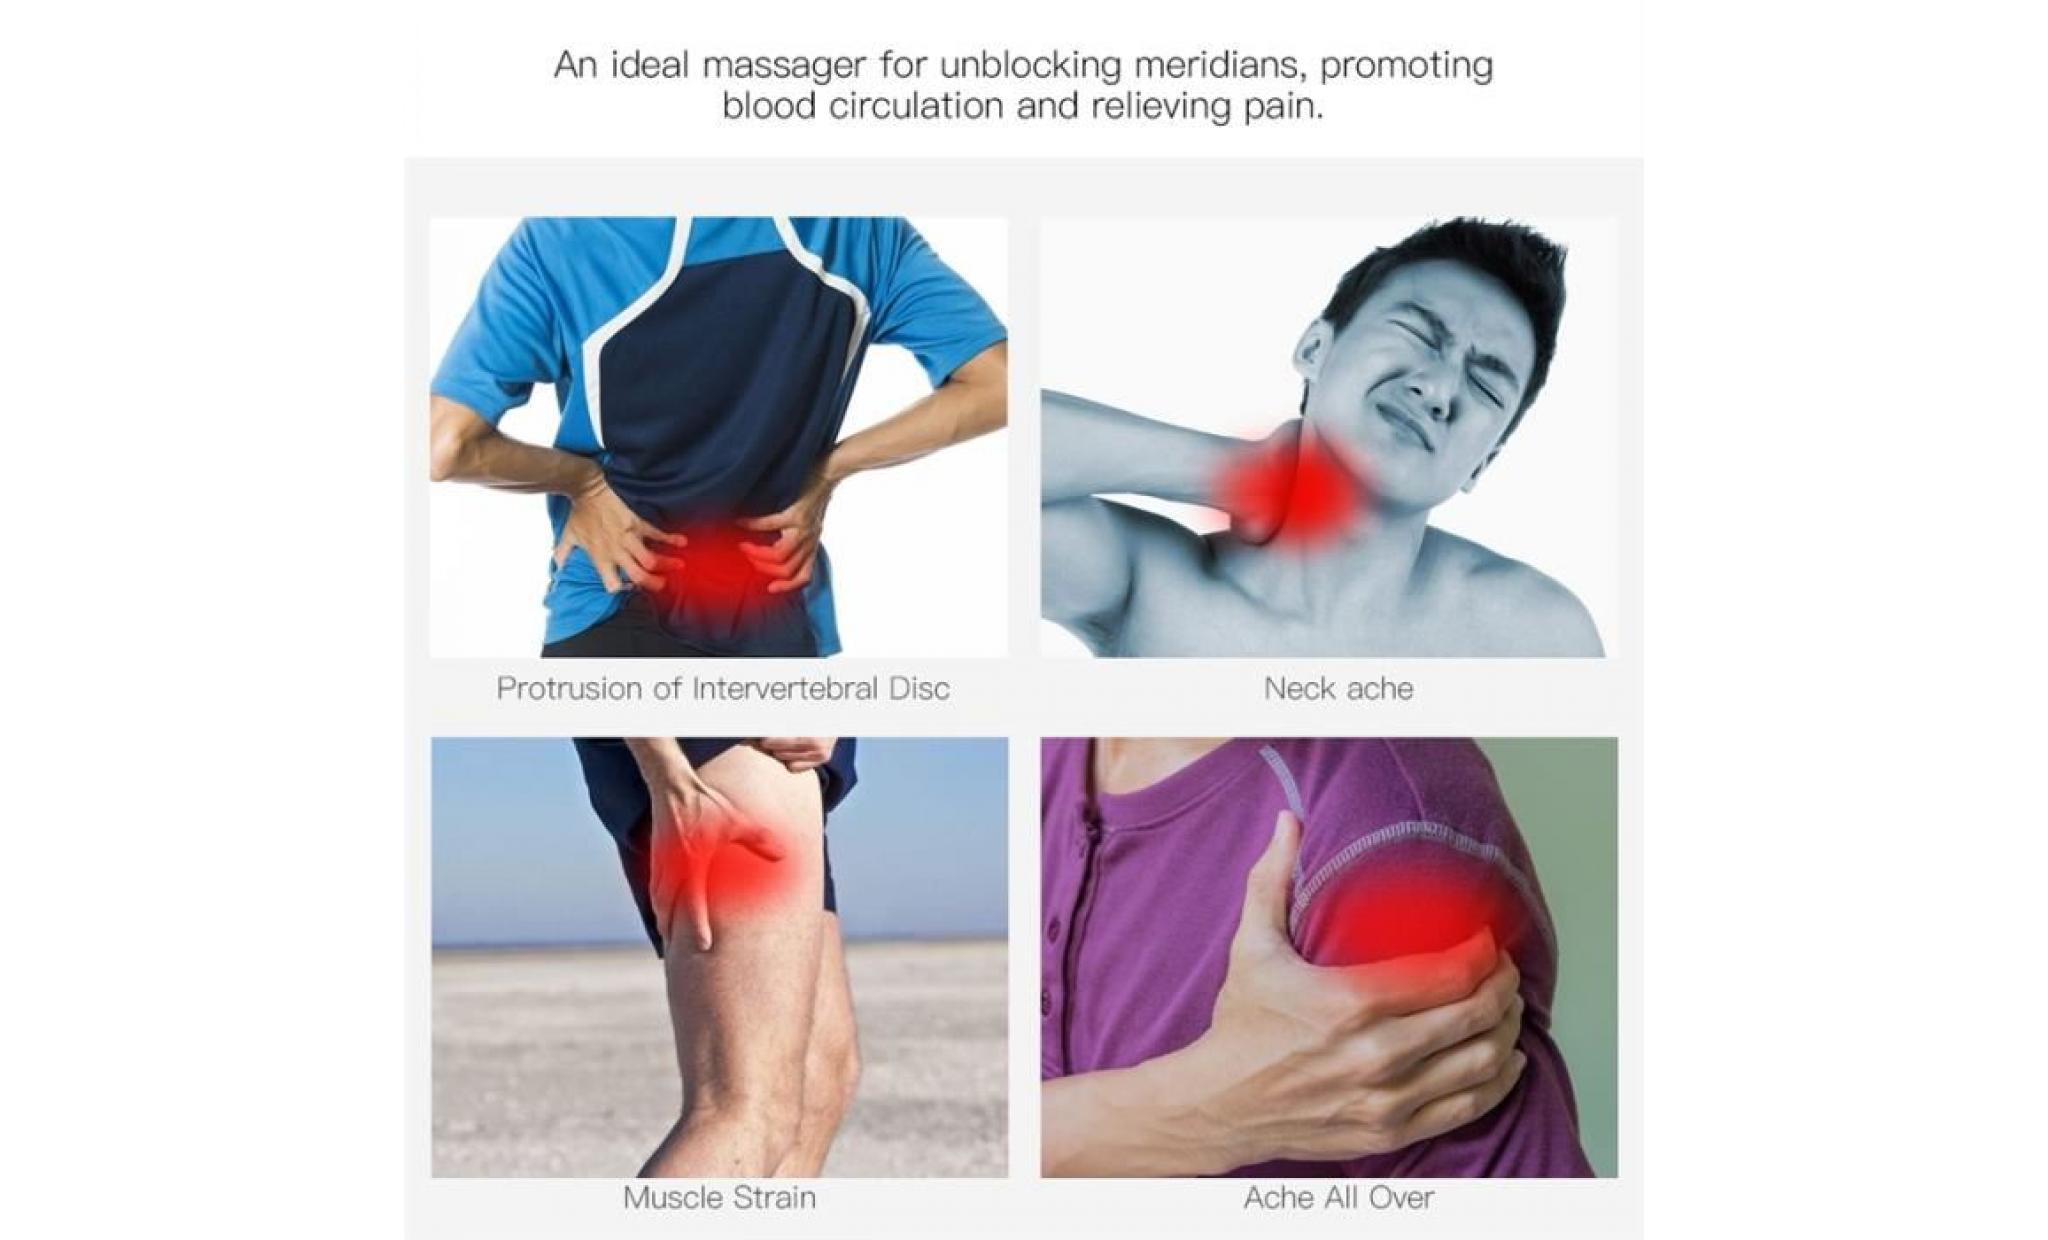 utimi corps baguette magique personnelle électrique massager releveur efficace de la douleur pour le dos, les jambes, bras et les pas cher